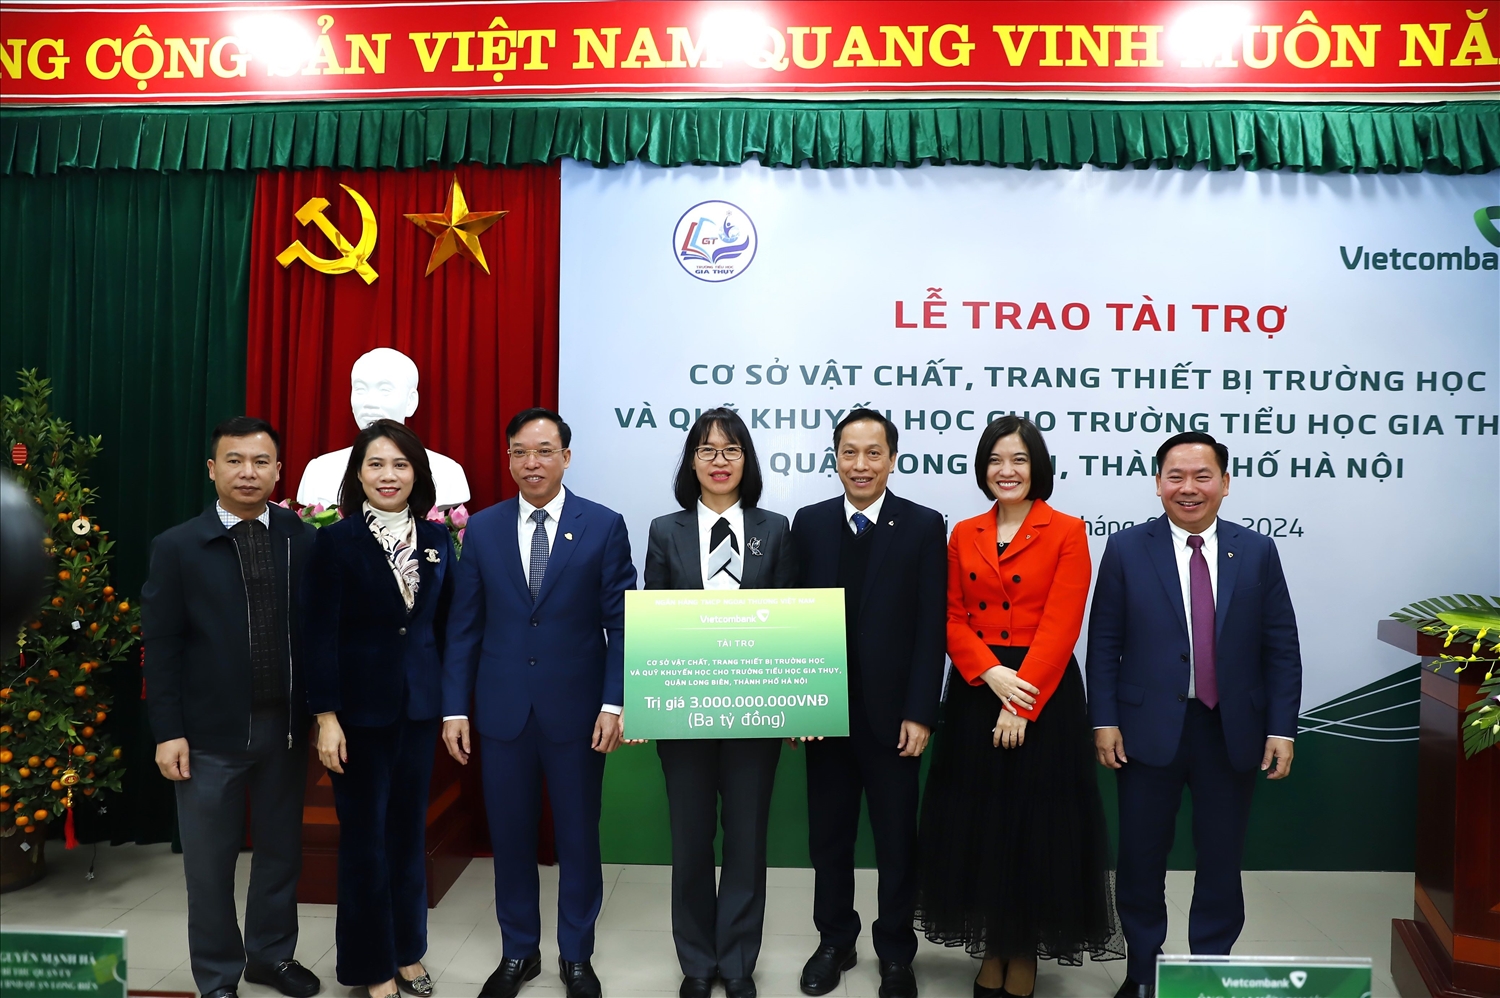 Lãnh đạo Vietcombank và lãnh đạo UBND quận Long Biên chụp ảnh lưu niệm chúc mừng thầy và trò trường tiểu học Gia Thụy đón nhận quà tặng ASXH của Vietcombank